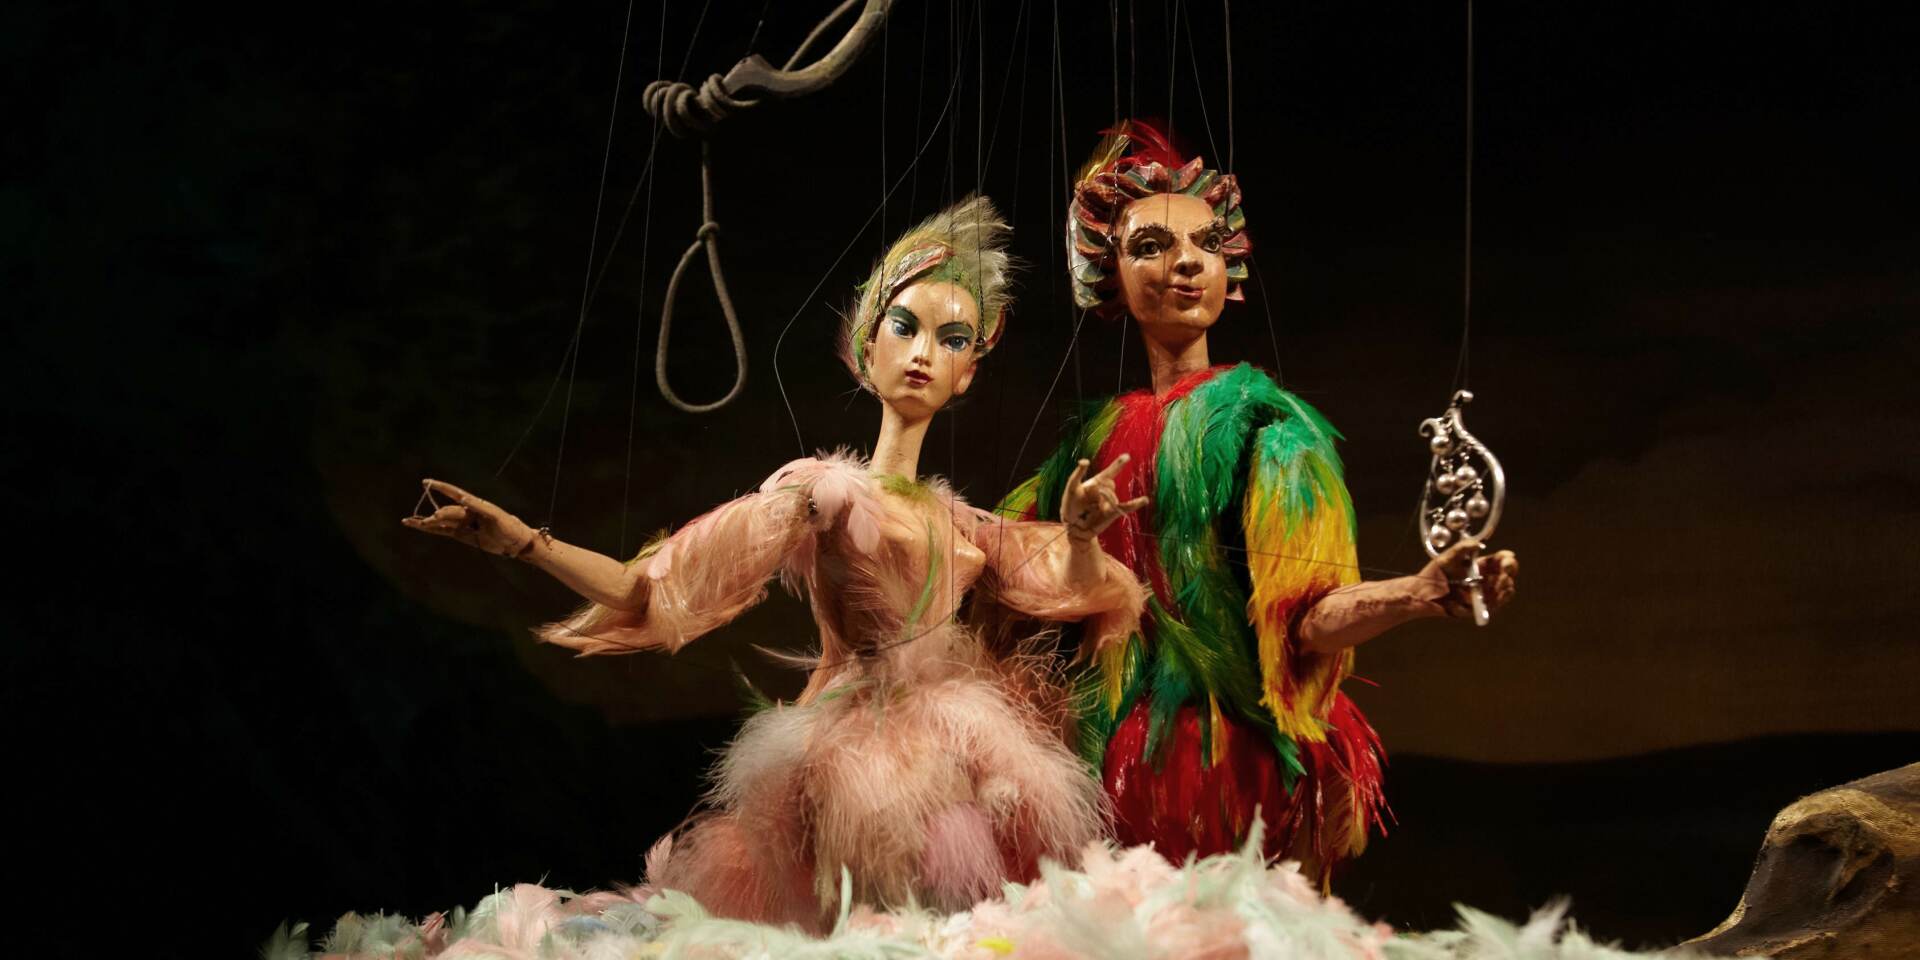 Salzburger Marionettentheater - Die Zauberflöte - Papageno und Papagena © Salzburger Marionettentheater